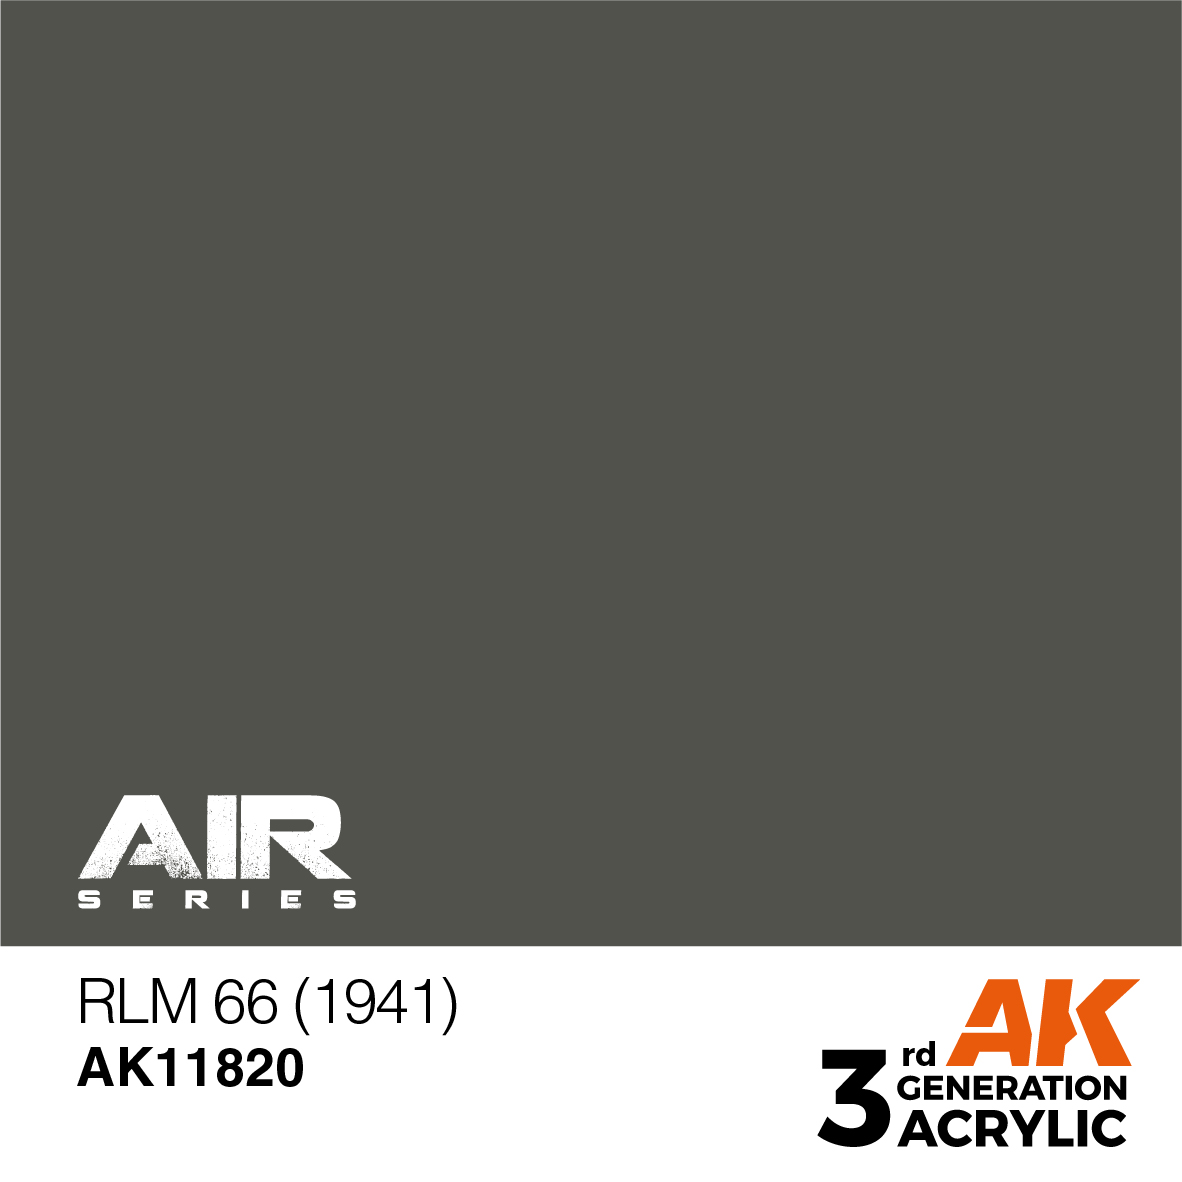 RLM 66 (1941) – AIR